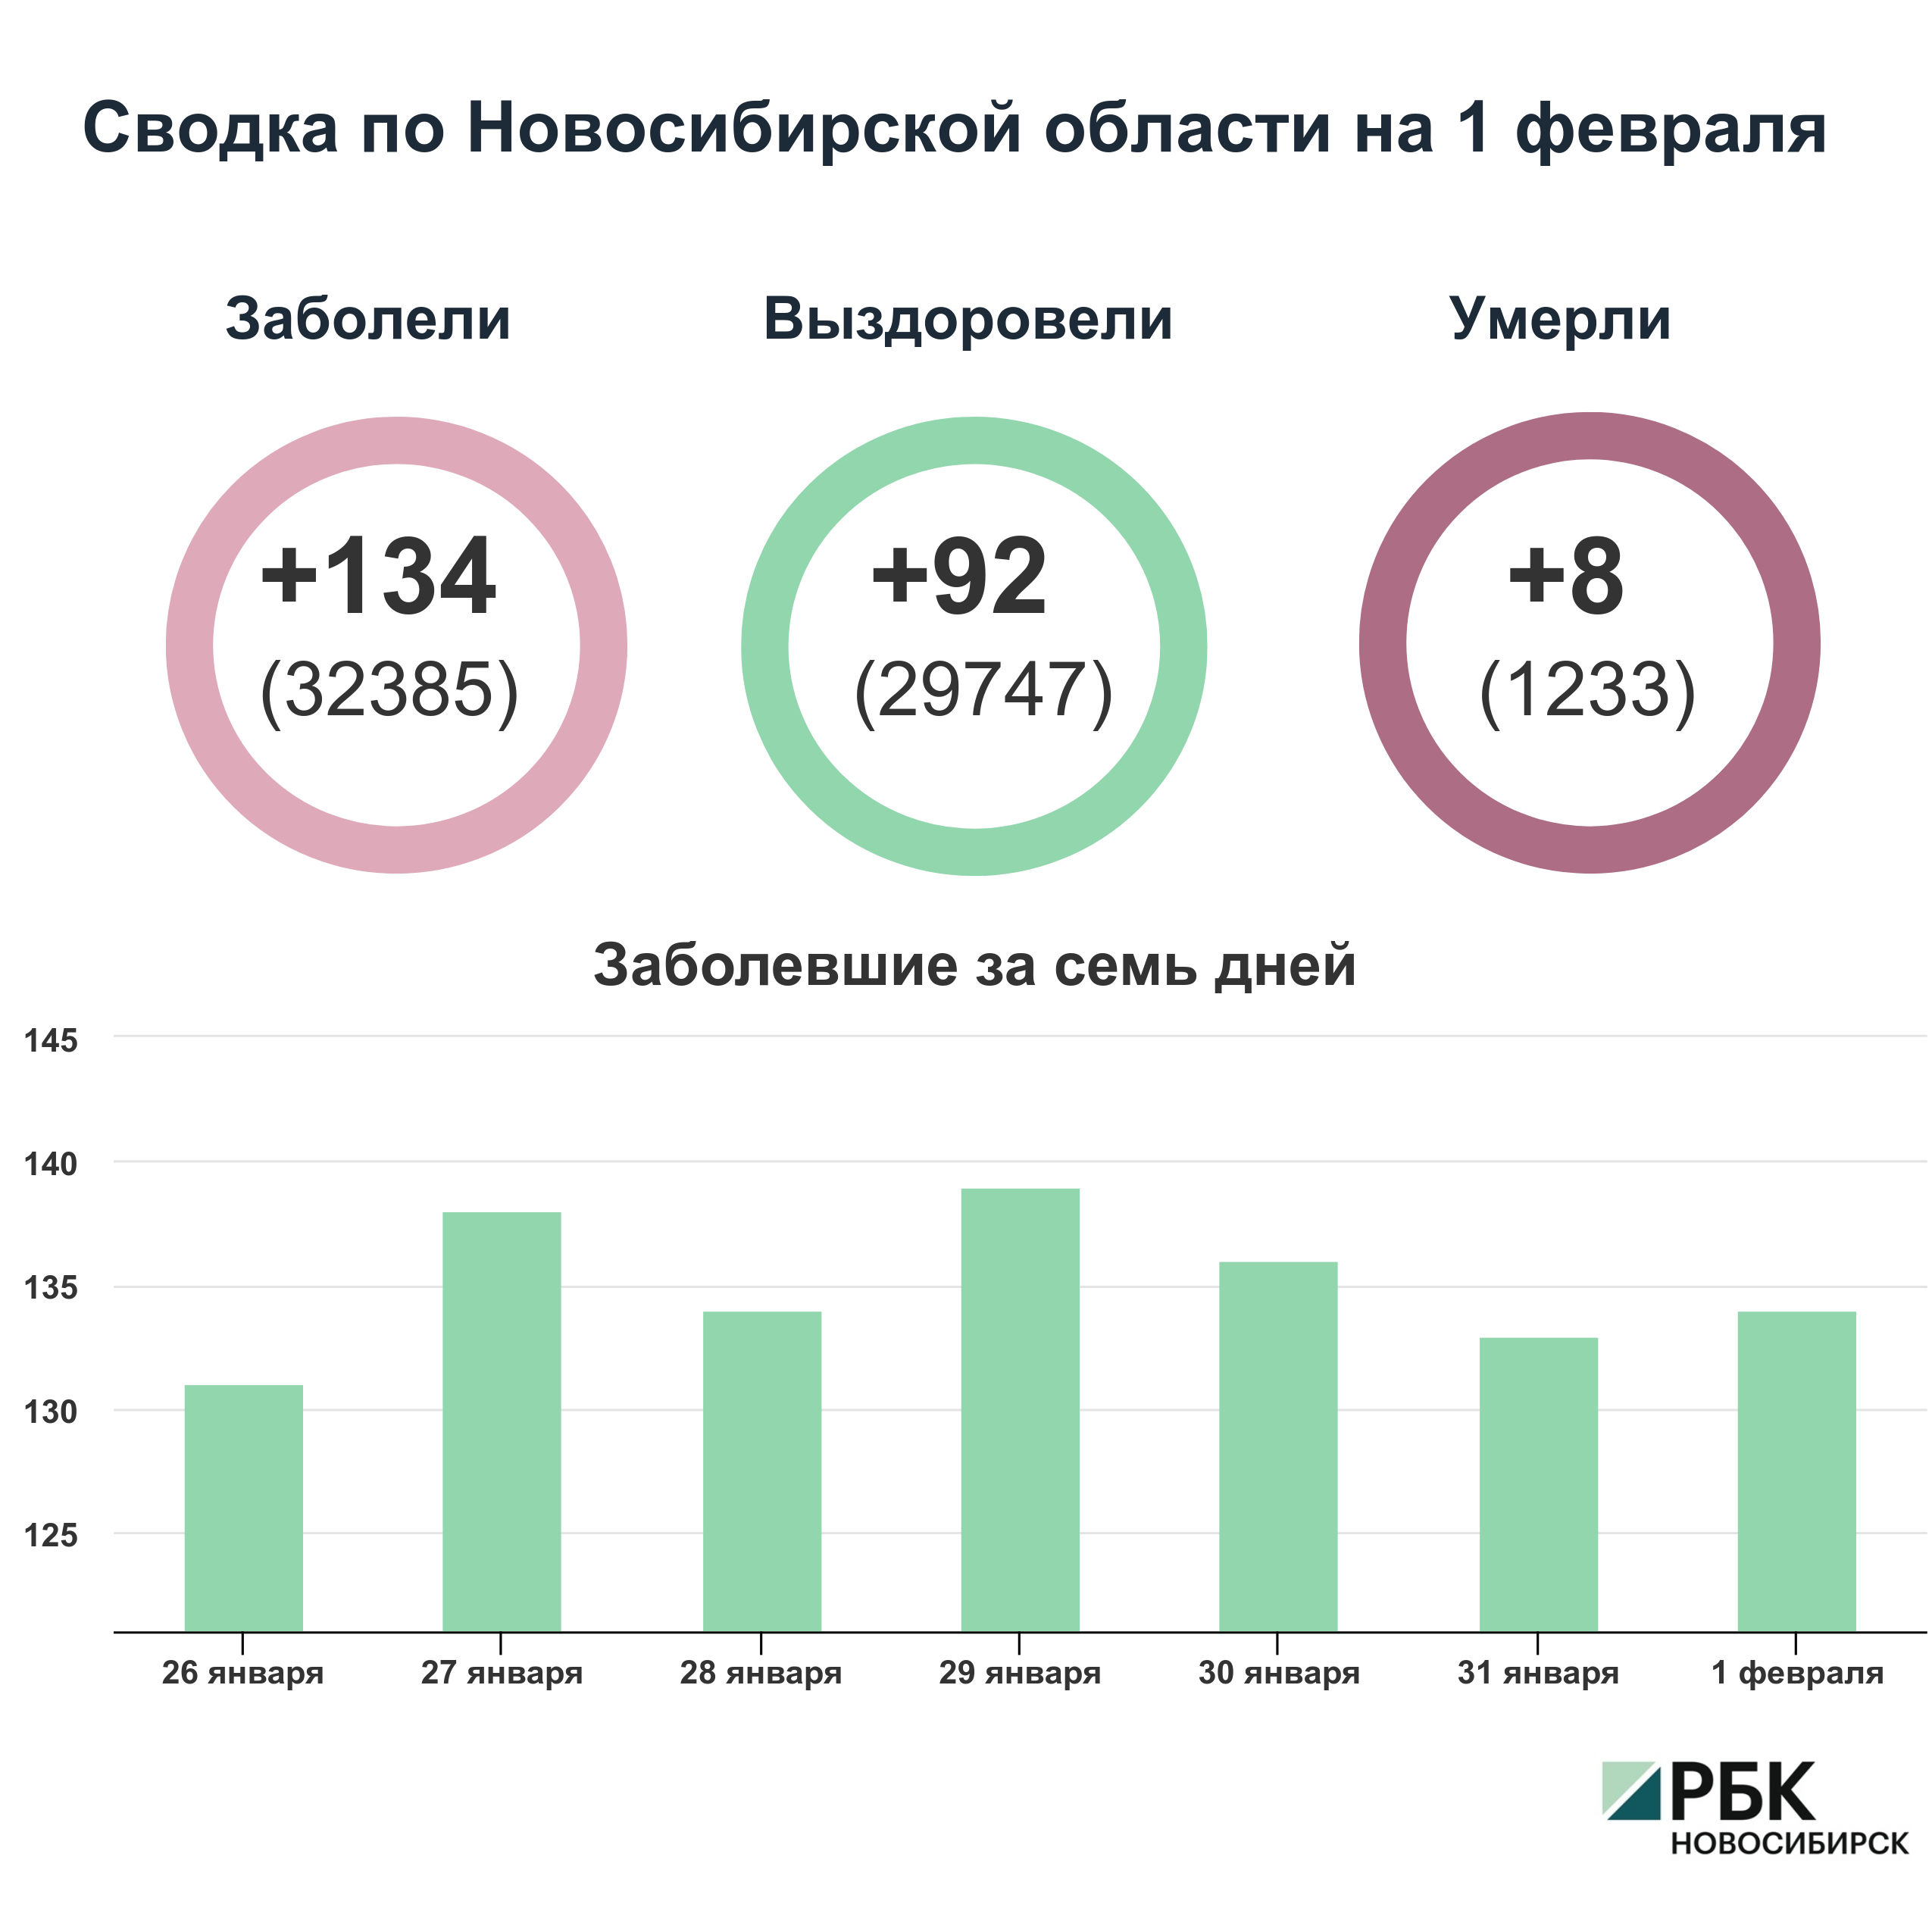 Коронавирус в Новосибирске: сводка на 1 февраля